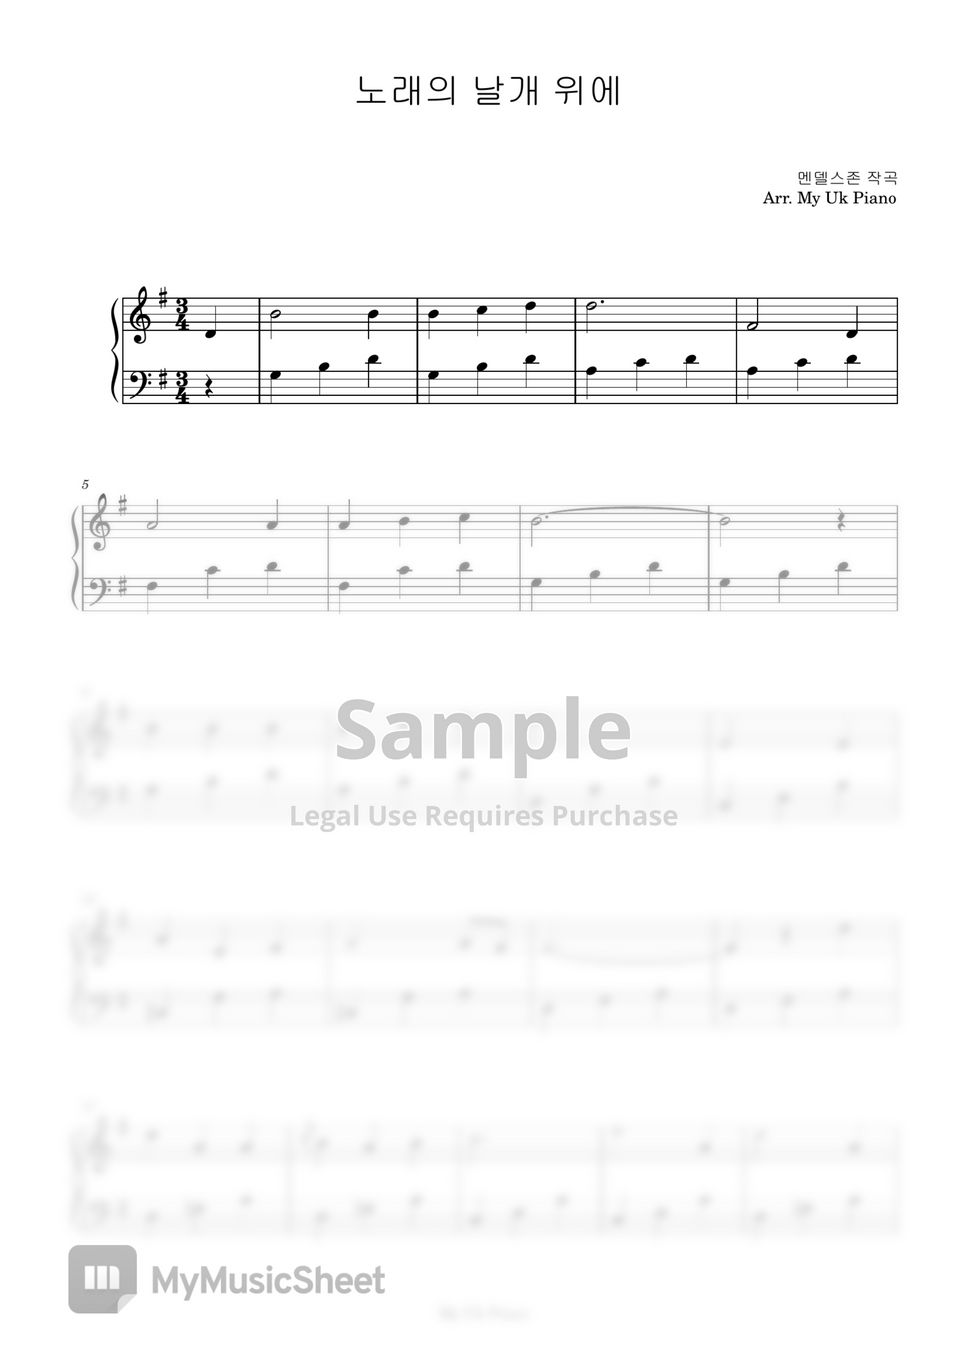 멘델스존 - 노래의 날개 위에 (쉬운피아노악보) by My Uk Piano